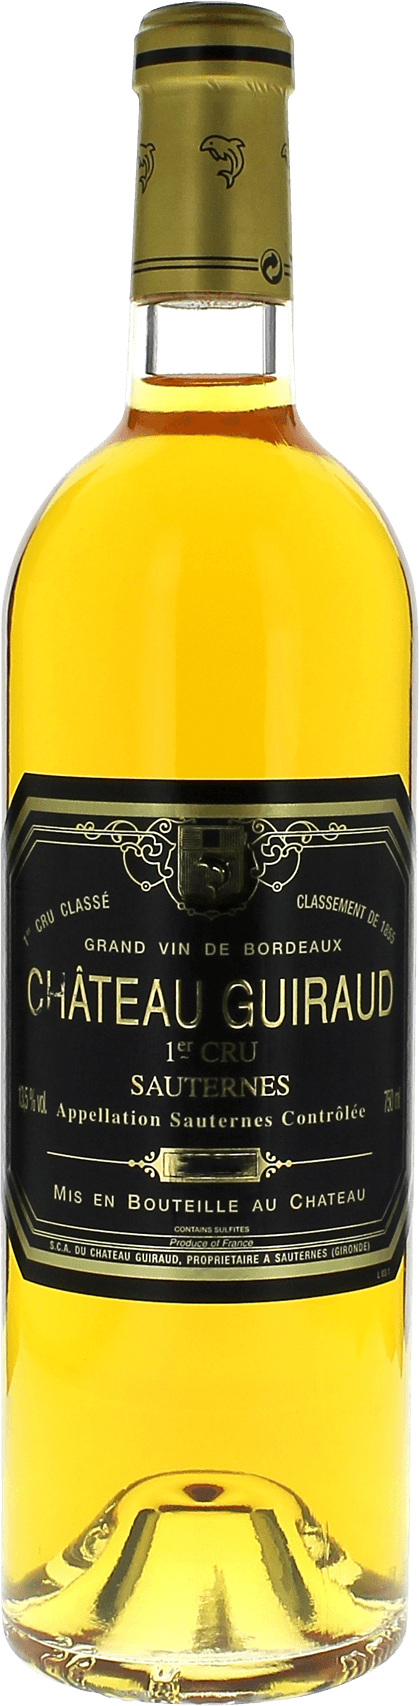 Guiraud 1998  Sauternes, Bordeaux blanc